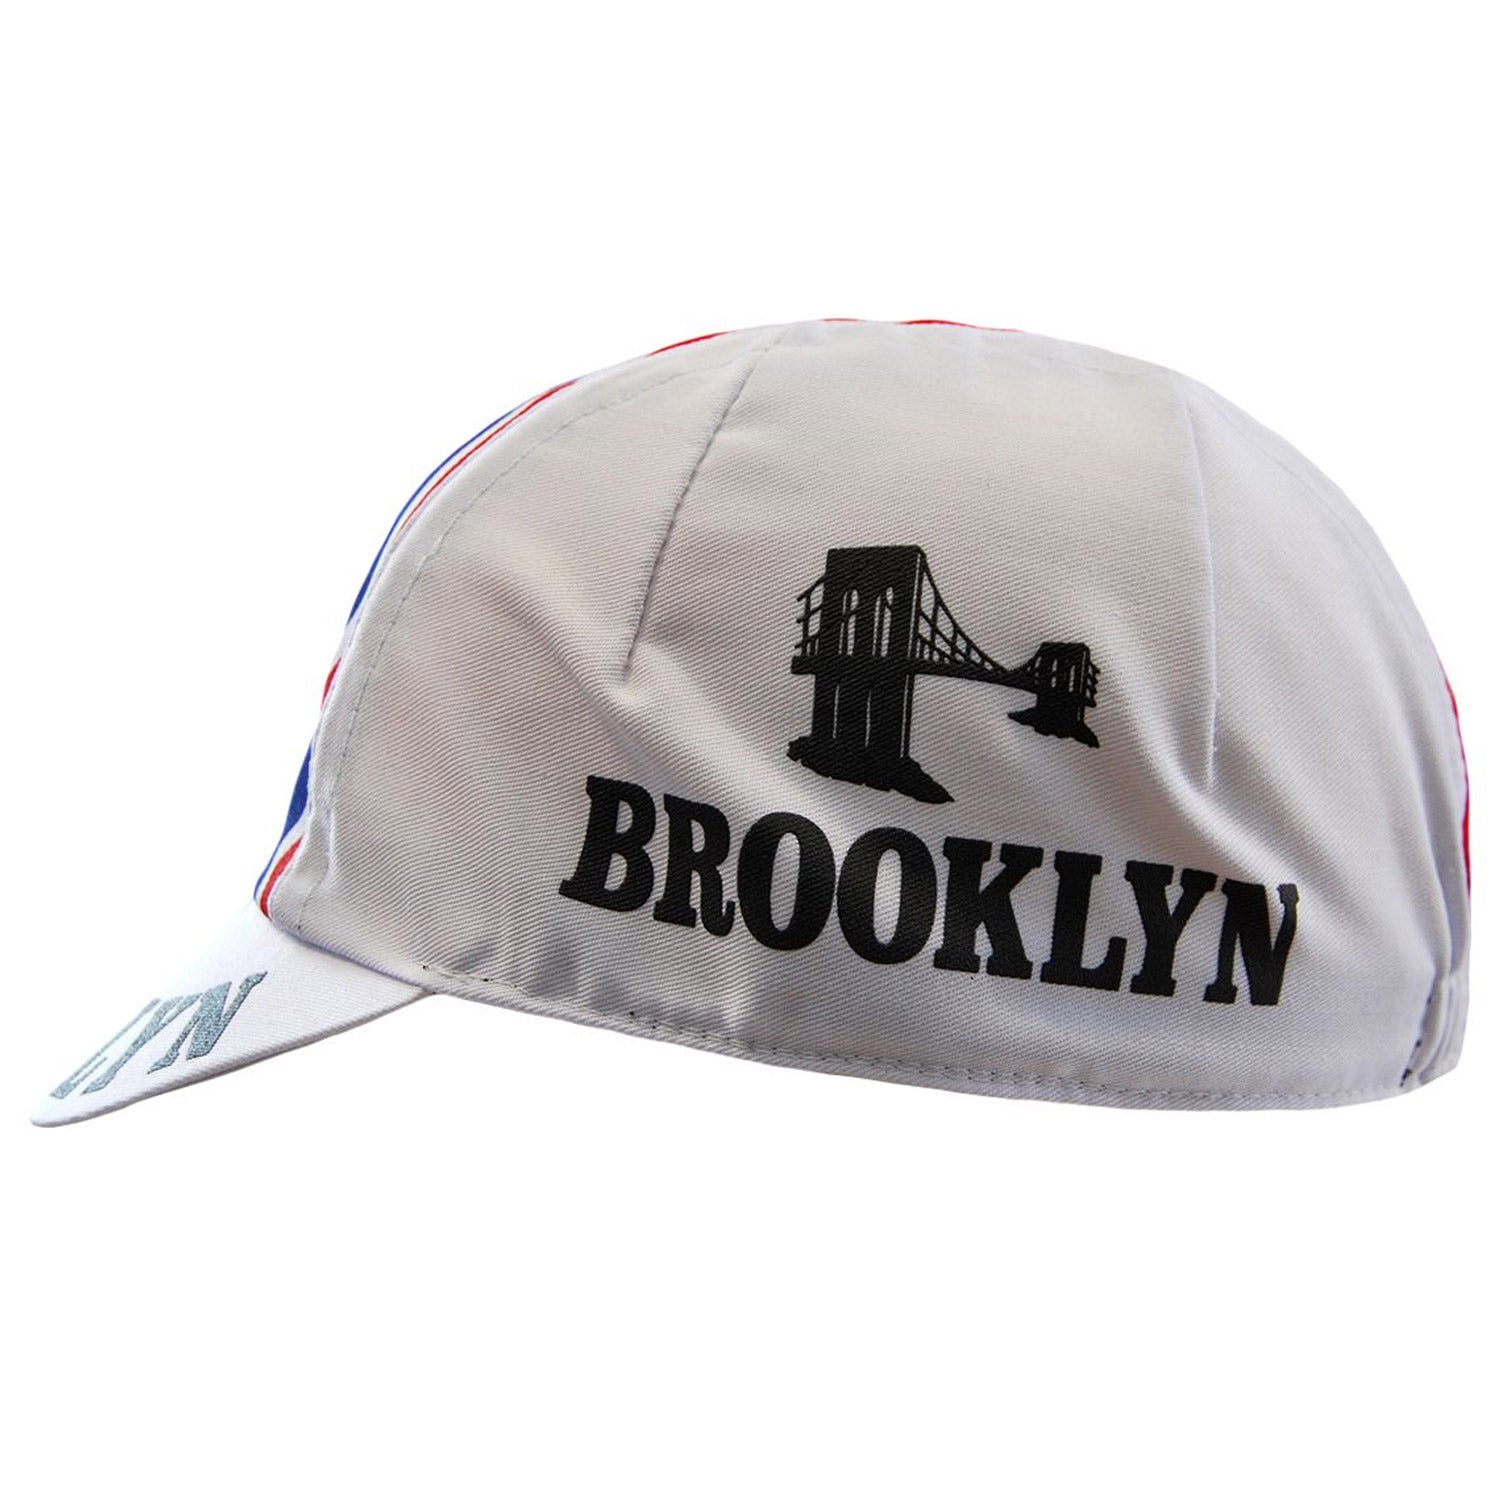 Casquette Headdy Brooklyn - Blanc